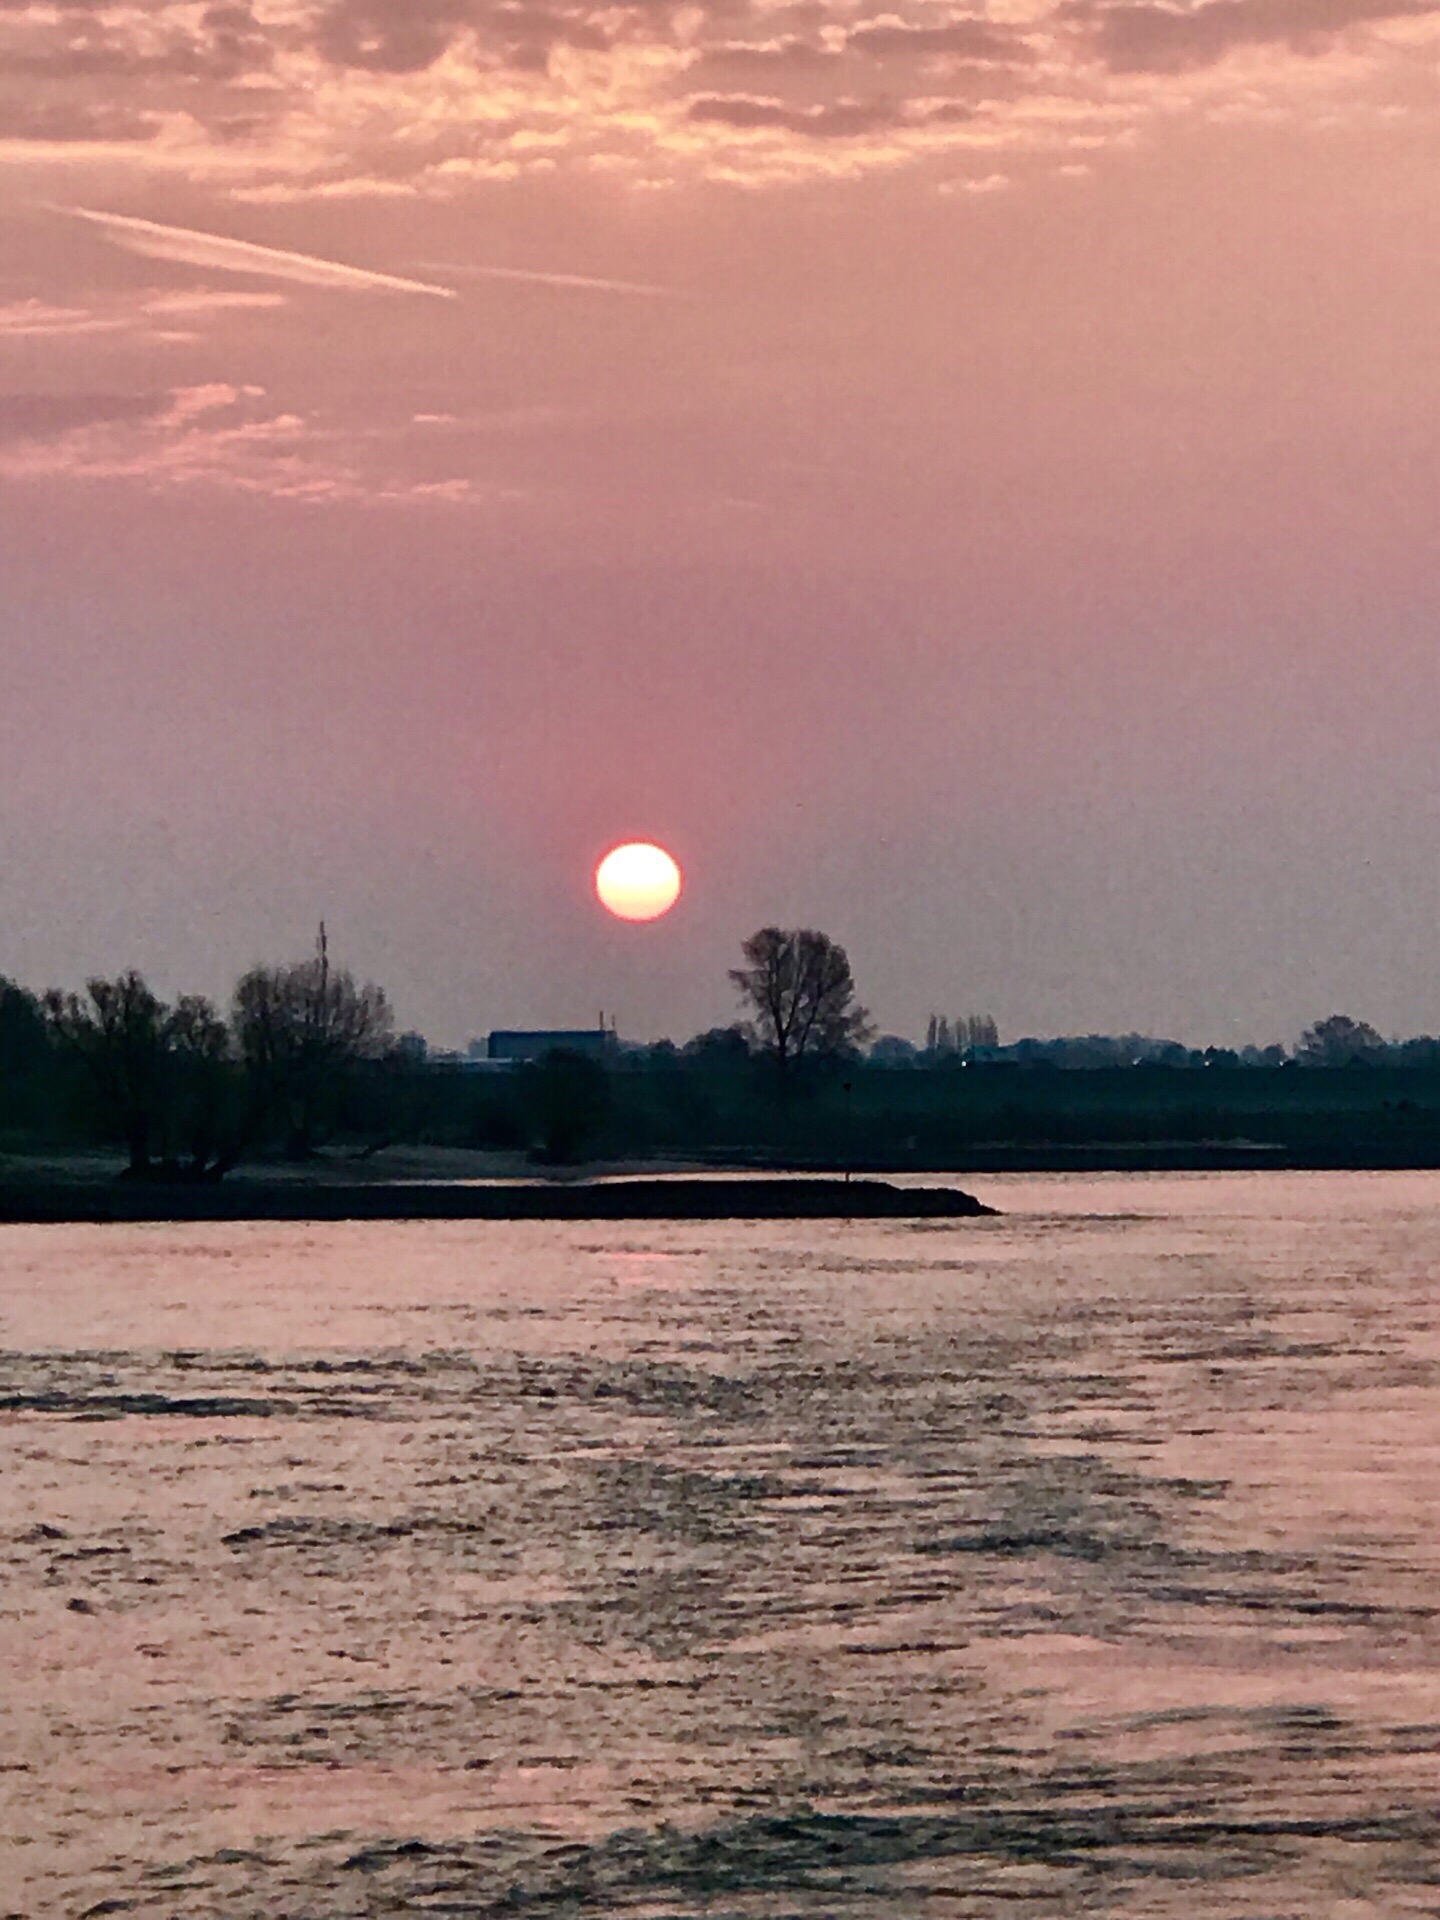 【莱茵河日出🌅】 在游船上观看莱茵河日出，随着游轮的行进，旭日从树梢上移至大桥下、大桥上，朝霞染红了